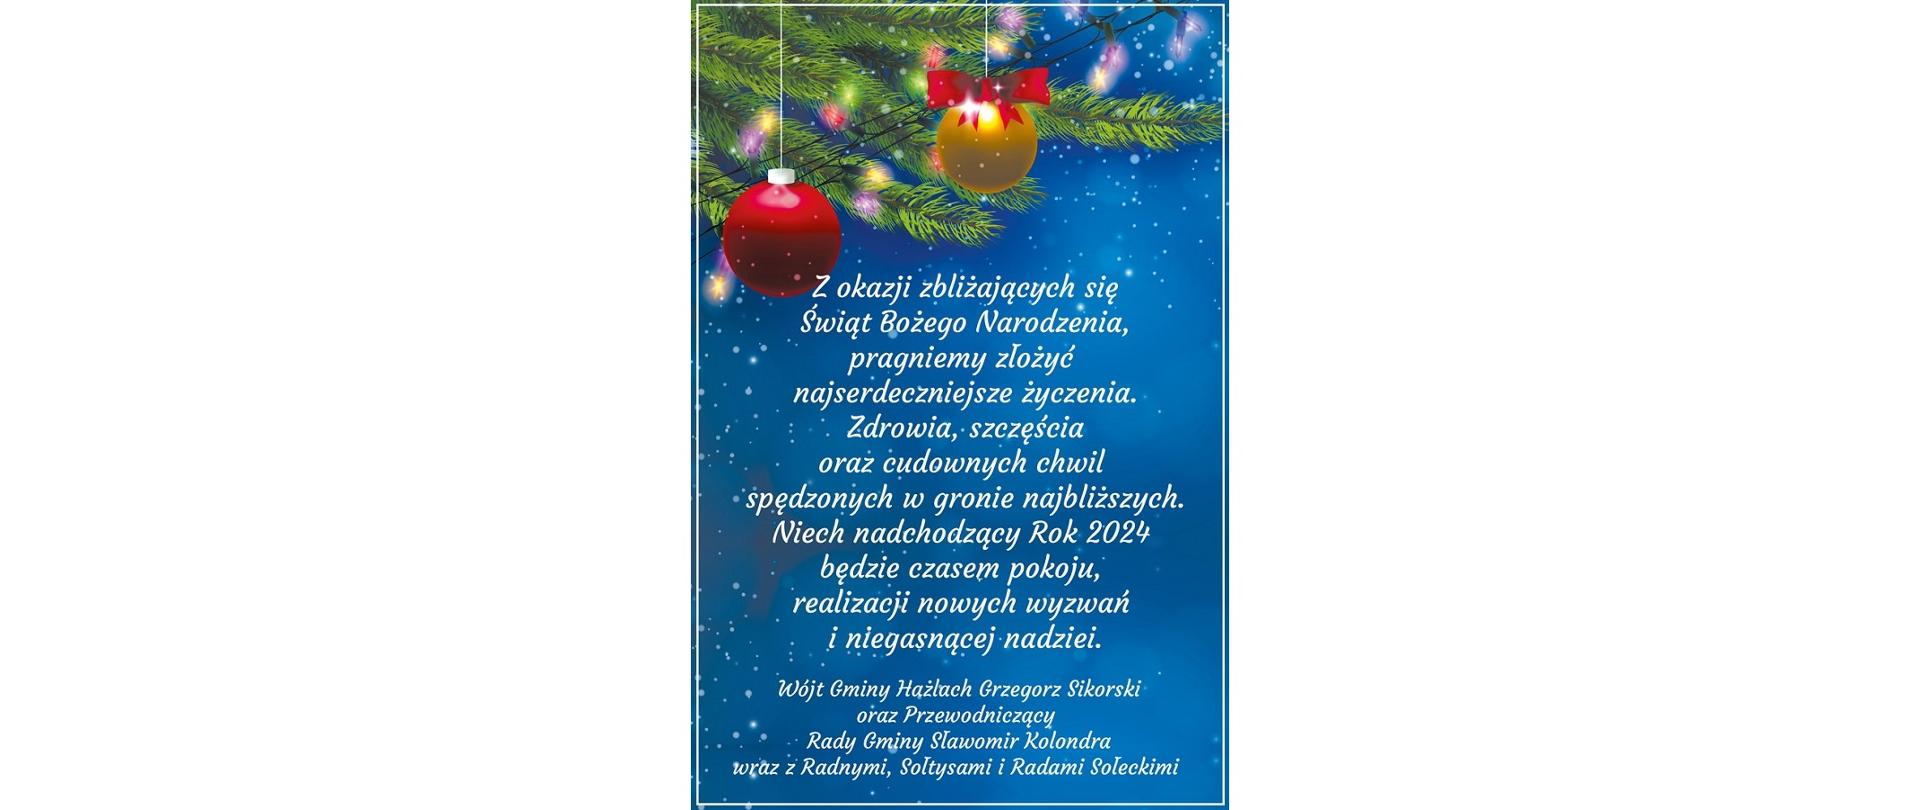 Świąteczno-noworoczne życzenia od władz Gminy Hażlach. W tle wiszące bańki, światełka i gałązki choinki. Na pierwszym planie treść: Z okazji zbliżających się Świąt Bożego Narodzenia, pragniemy złożyć najserdeczniejsze życzenia. Zdrowia, szczęścia oraz cudownych chwil spędzonych w gronie najbliższych. Niech nadchodzący Rok 2024 będzie czasem pokoju, realizacji nowych wyzwań i niegasnącej nadziei. Wójt Gminy Hażlach Grzegorz Sikorski oraz Przewodniczący Rady Gminy Sławomir Kolondra wraz z Radnymi, Sołtysami i Radami Sołeckimi